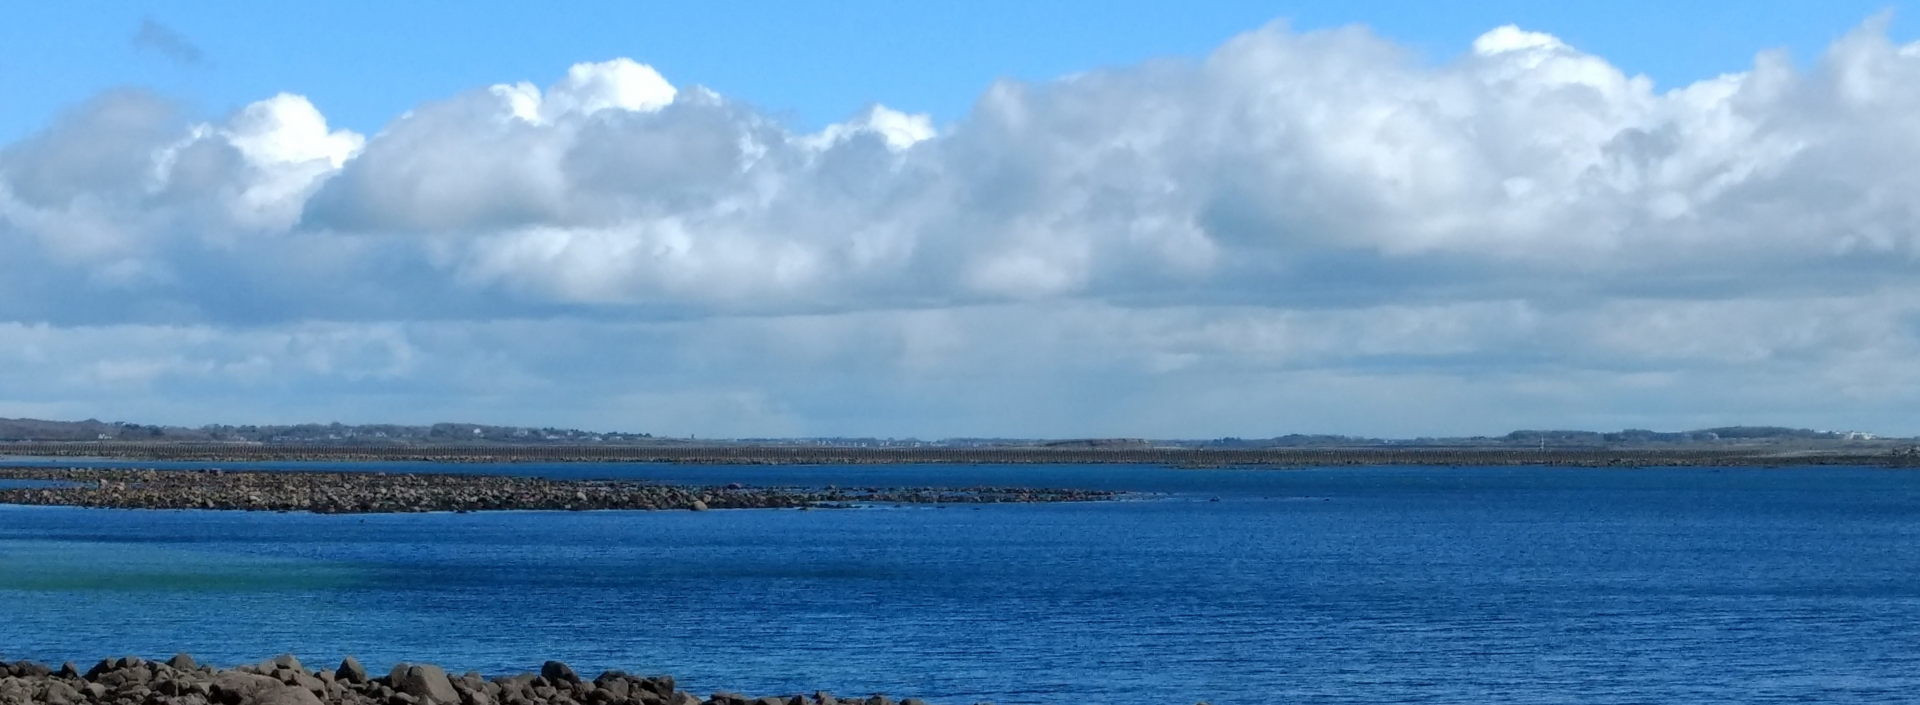 Foto der irischen See. Im Hintergrund ist eine Landzunge zu sehen. Die obere Hälfte des Bildes ist mit einem Wolkenhimmel bedeckt.